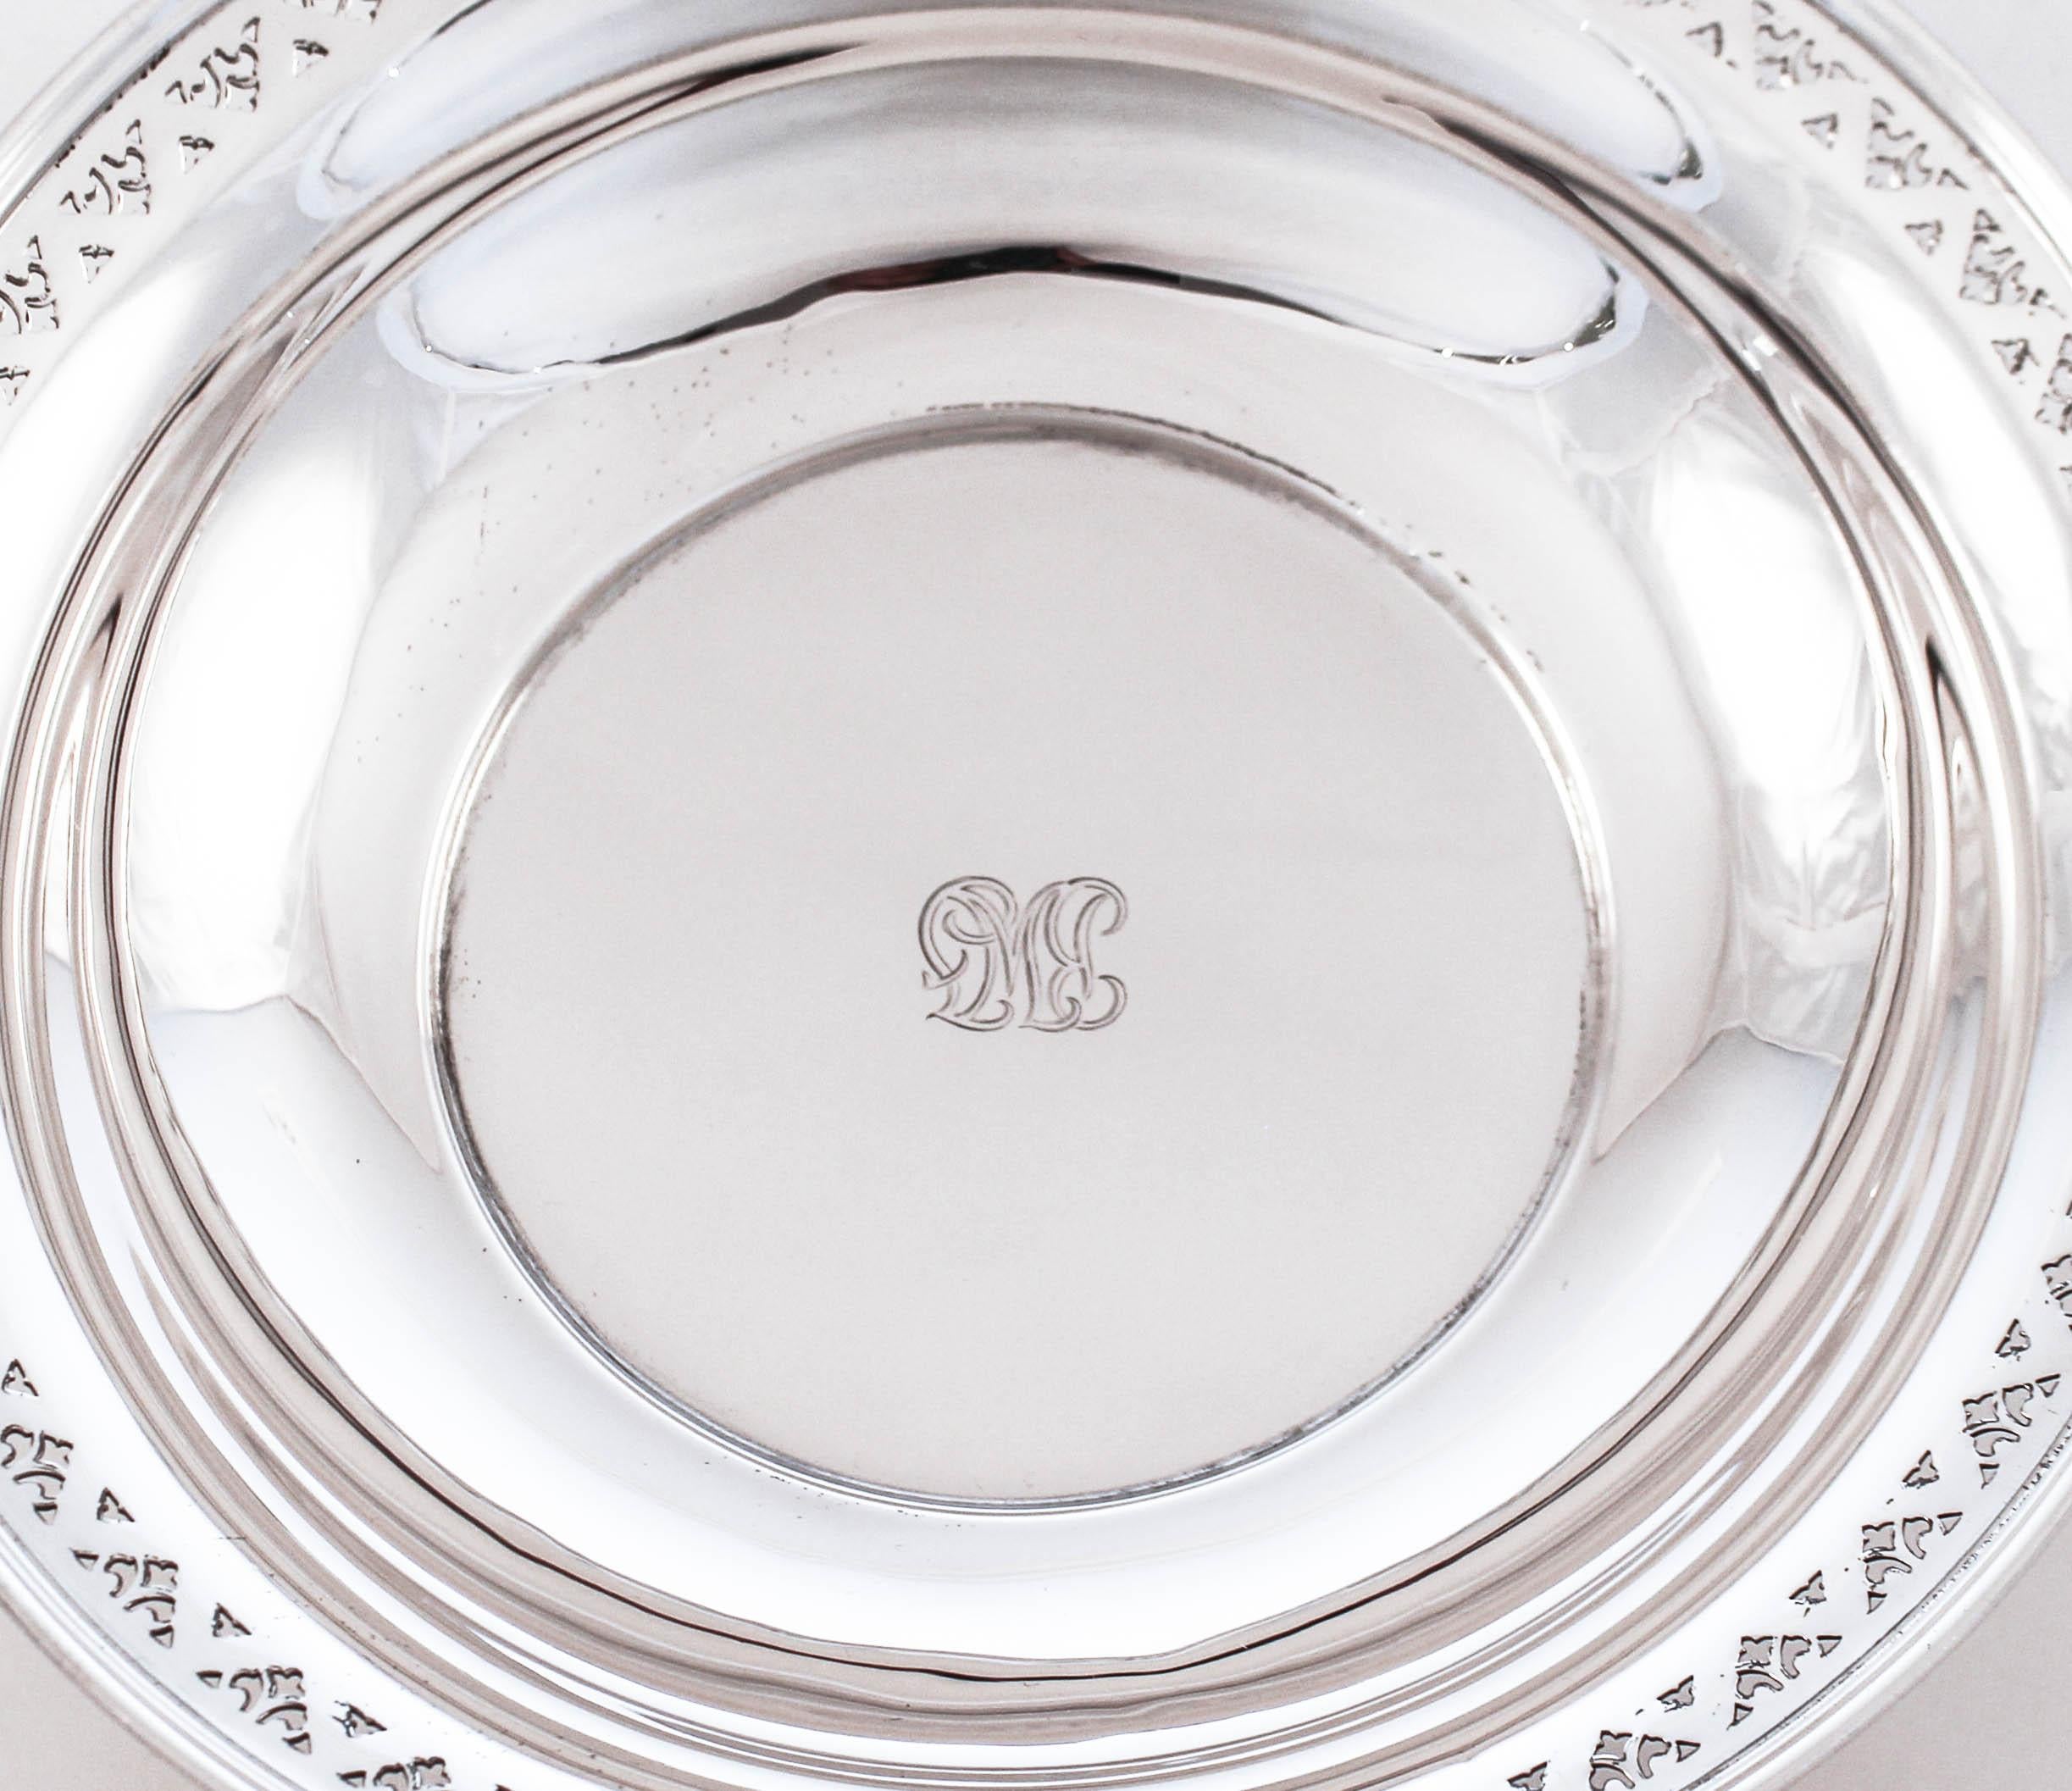 Nous vous proposons un bol en argent sterling de Tiffany & Co. Il présente un motif de découpe symétrique sur le pourtour. C'est une taille idéale pour les fruits ou les desserts. Au centre se trouve un monogramme gravé à la main dans le style